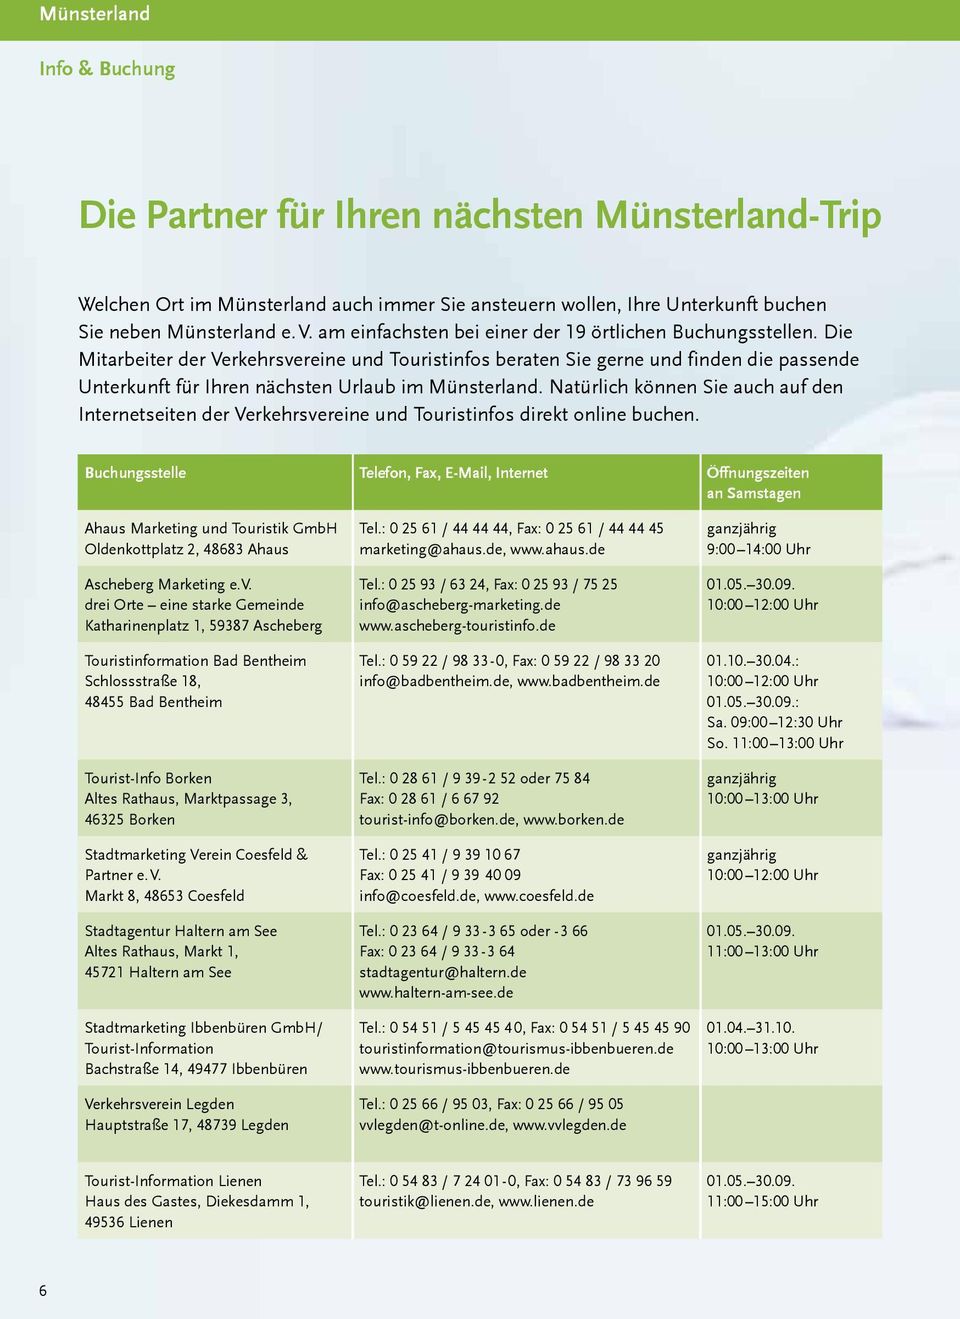 Die Mitarbeiter der Verkehrsvereine und Touristinfos beraten Sie gerne und finden die passende Unterkunft für Ihren nächsten Urlaub im Münsterland.